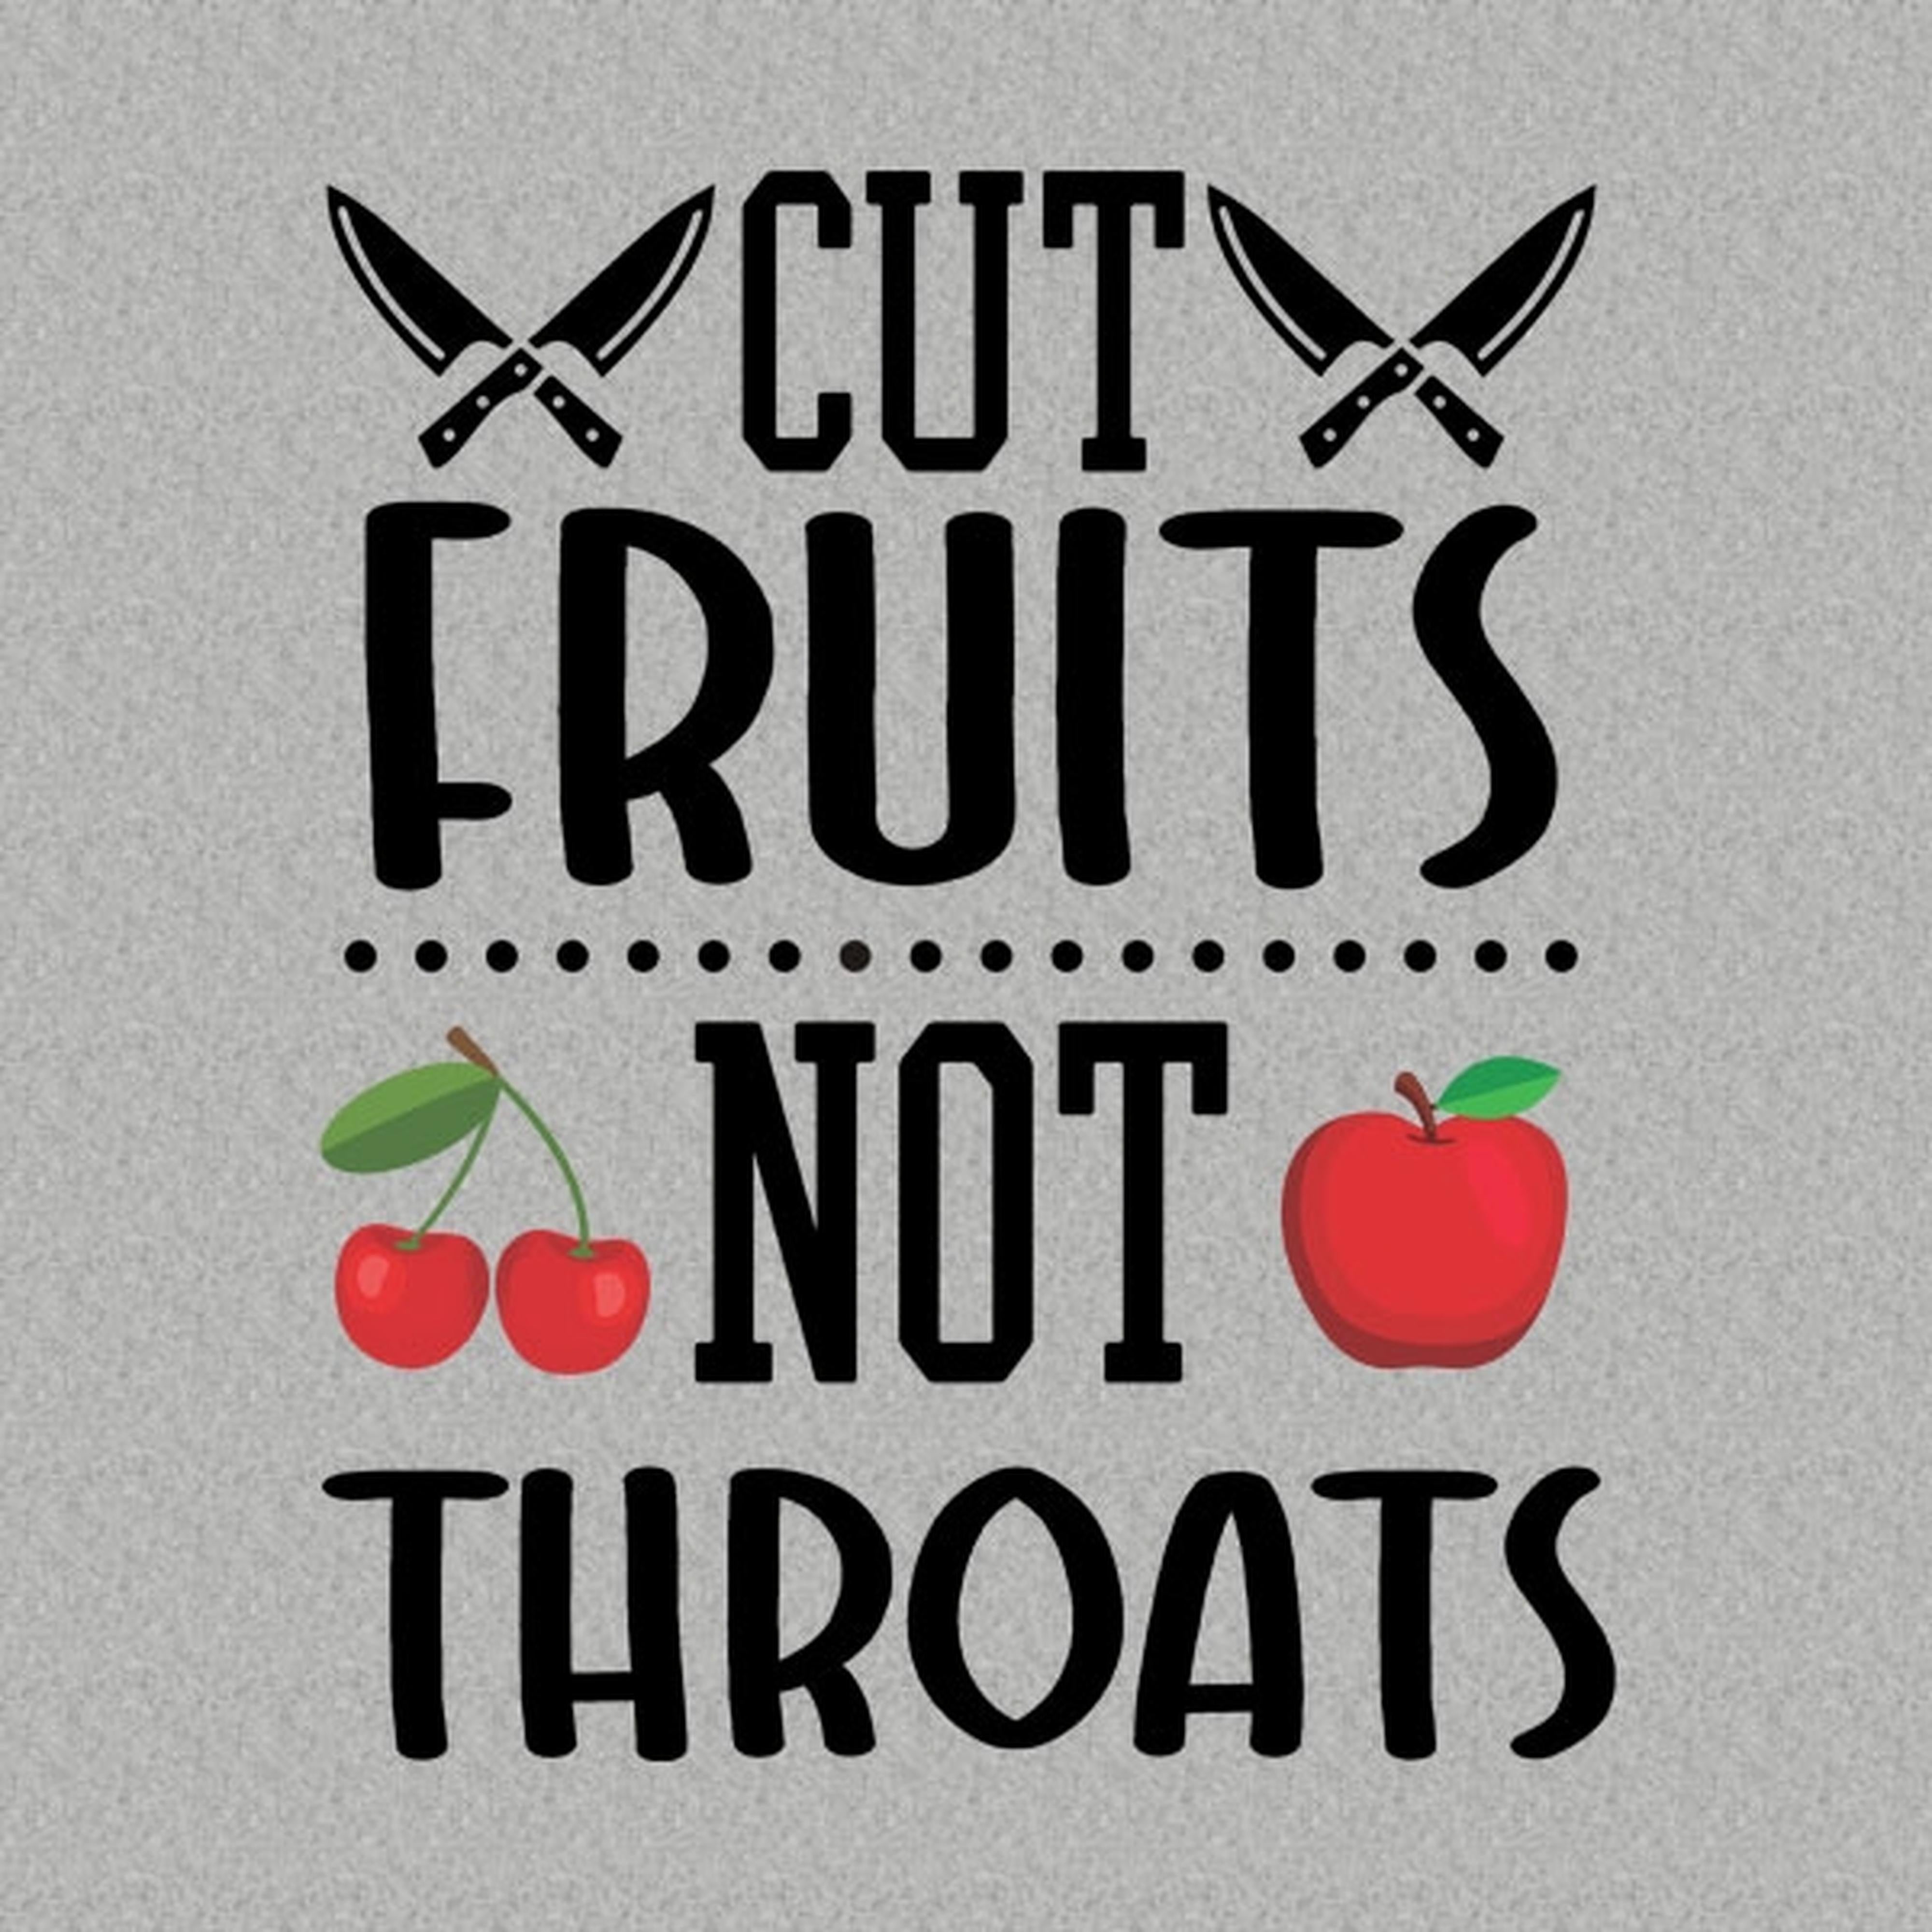 Cut fruits, Not throats T-shirt